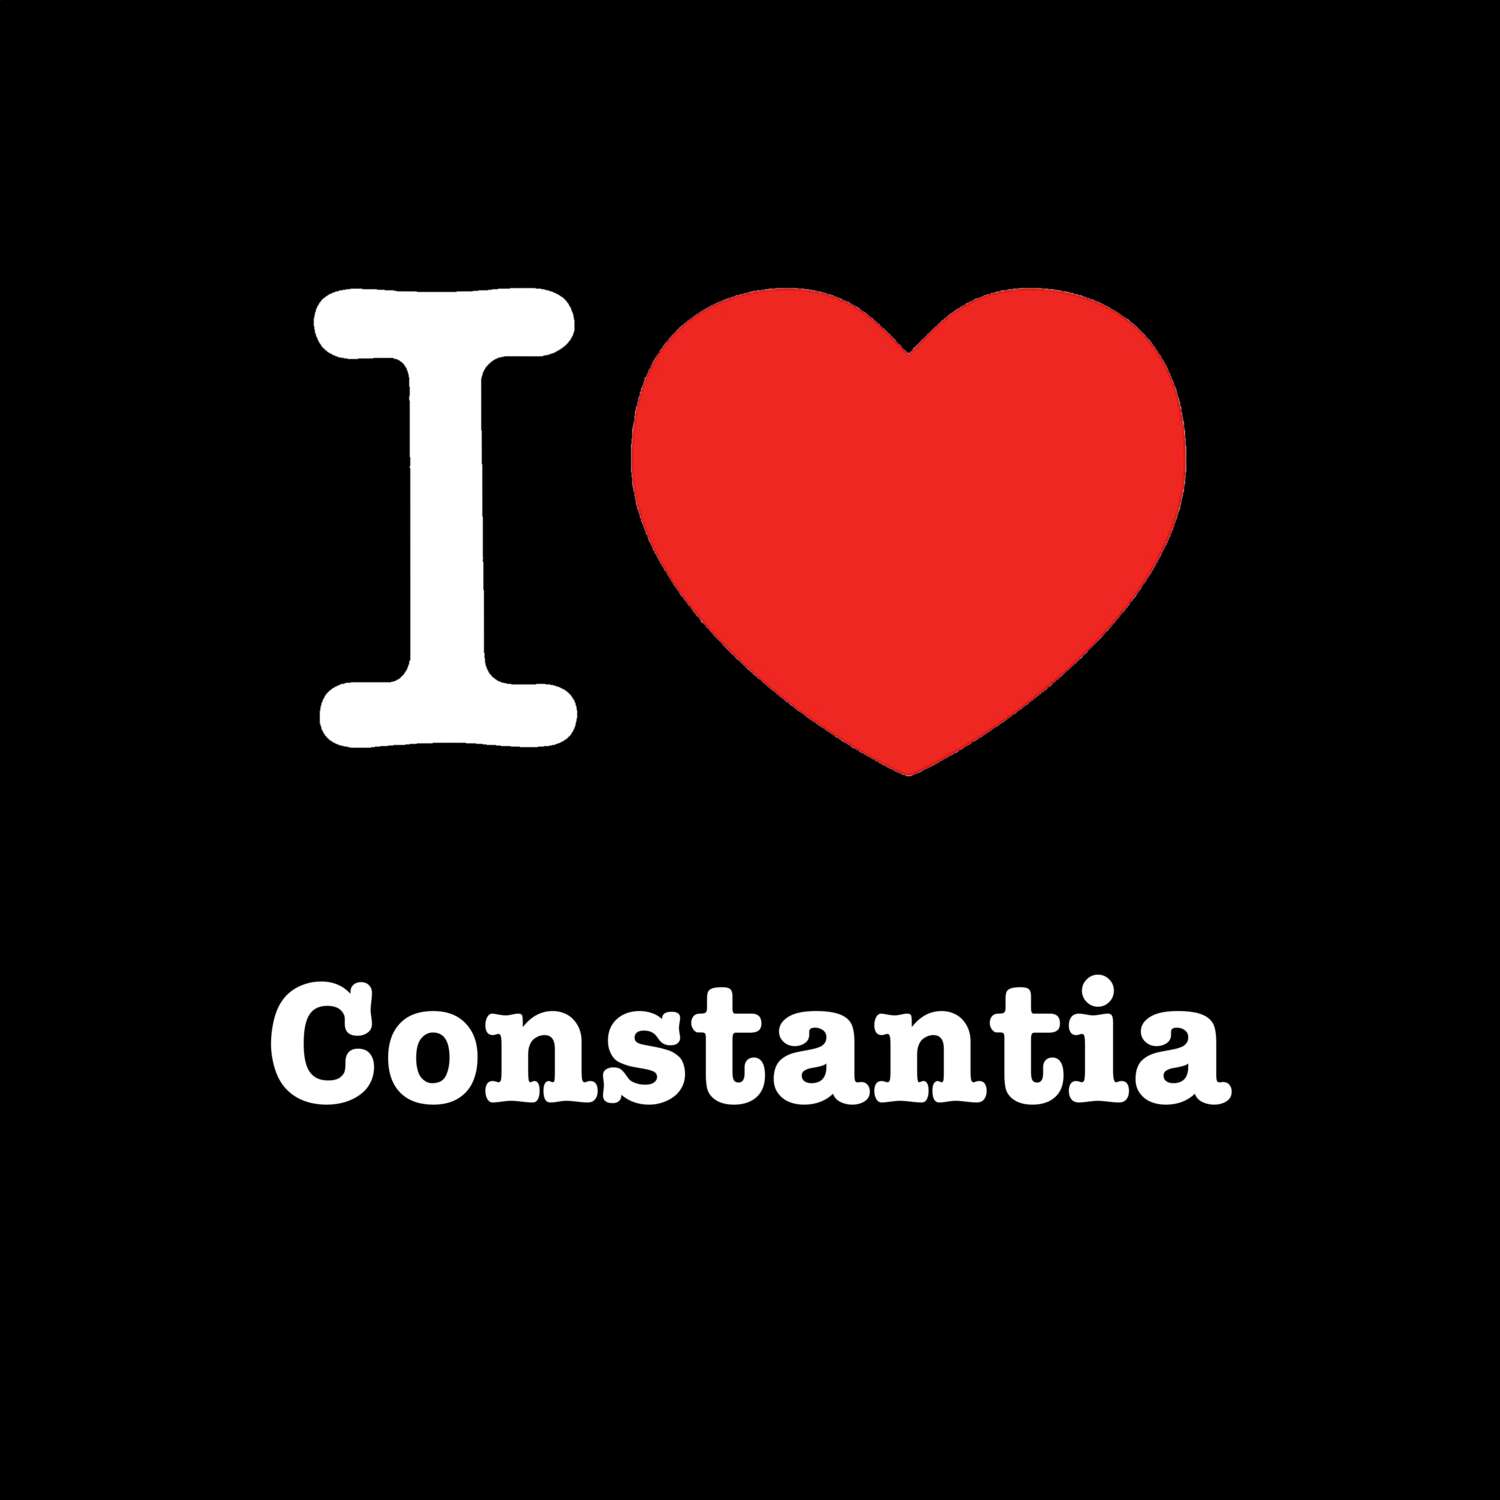 Constantia T-Shirt »I love«